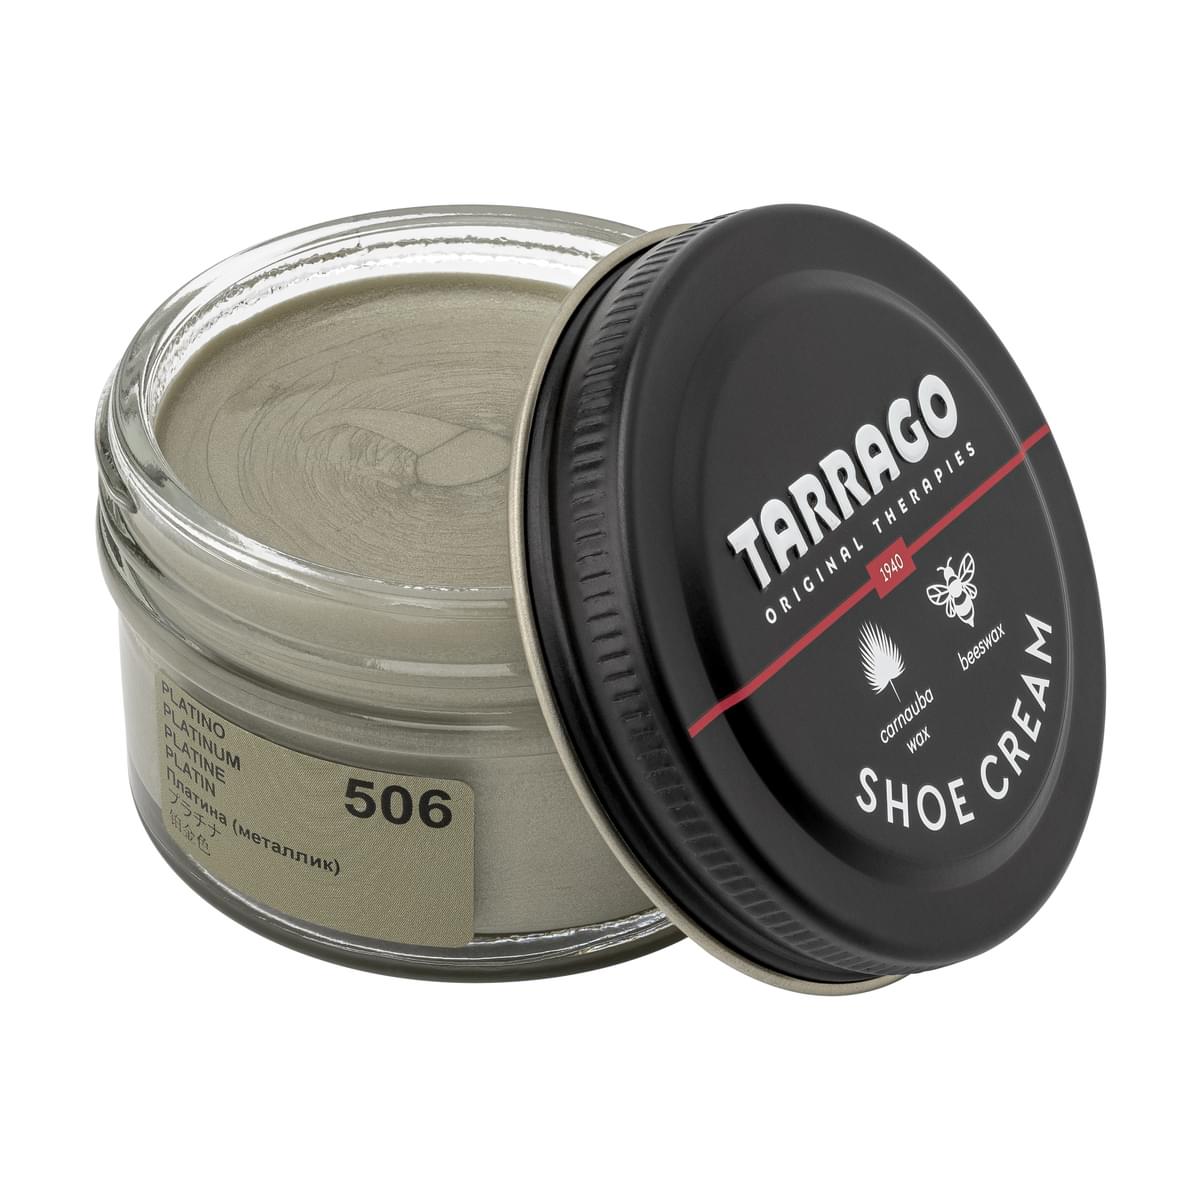 Tarrago Shoe Cream  - Platinum - 506